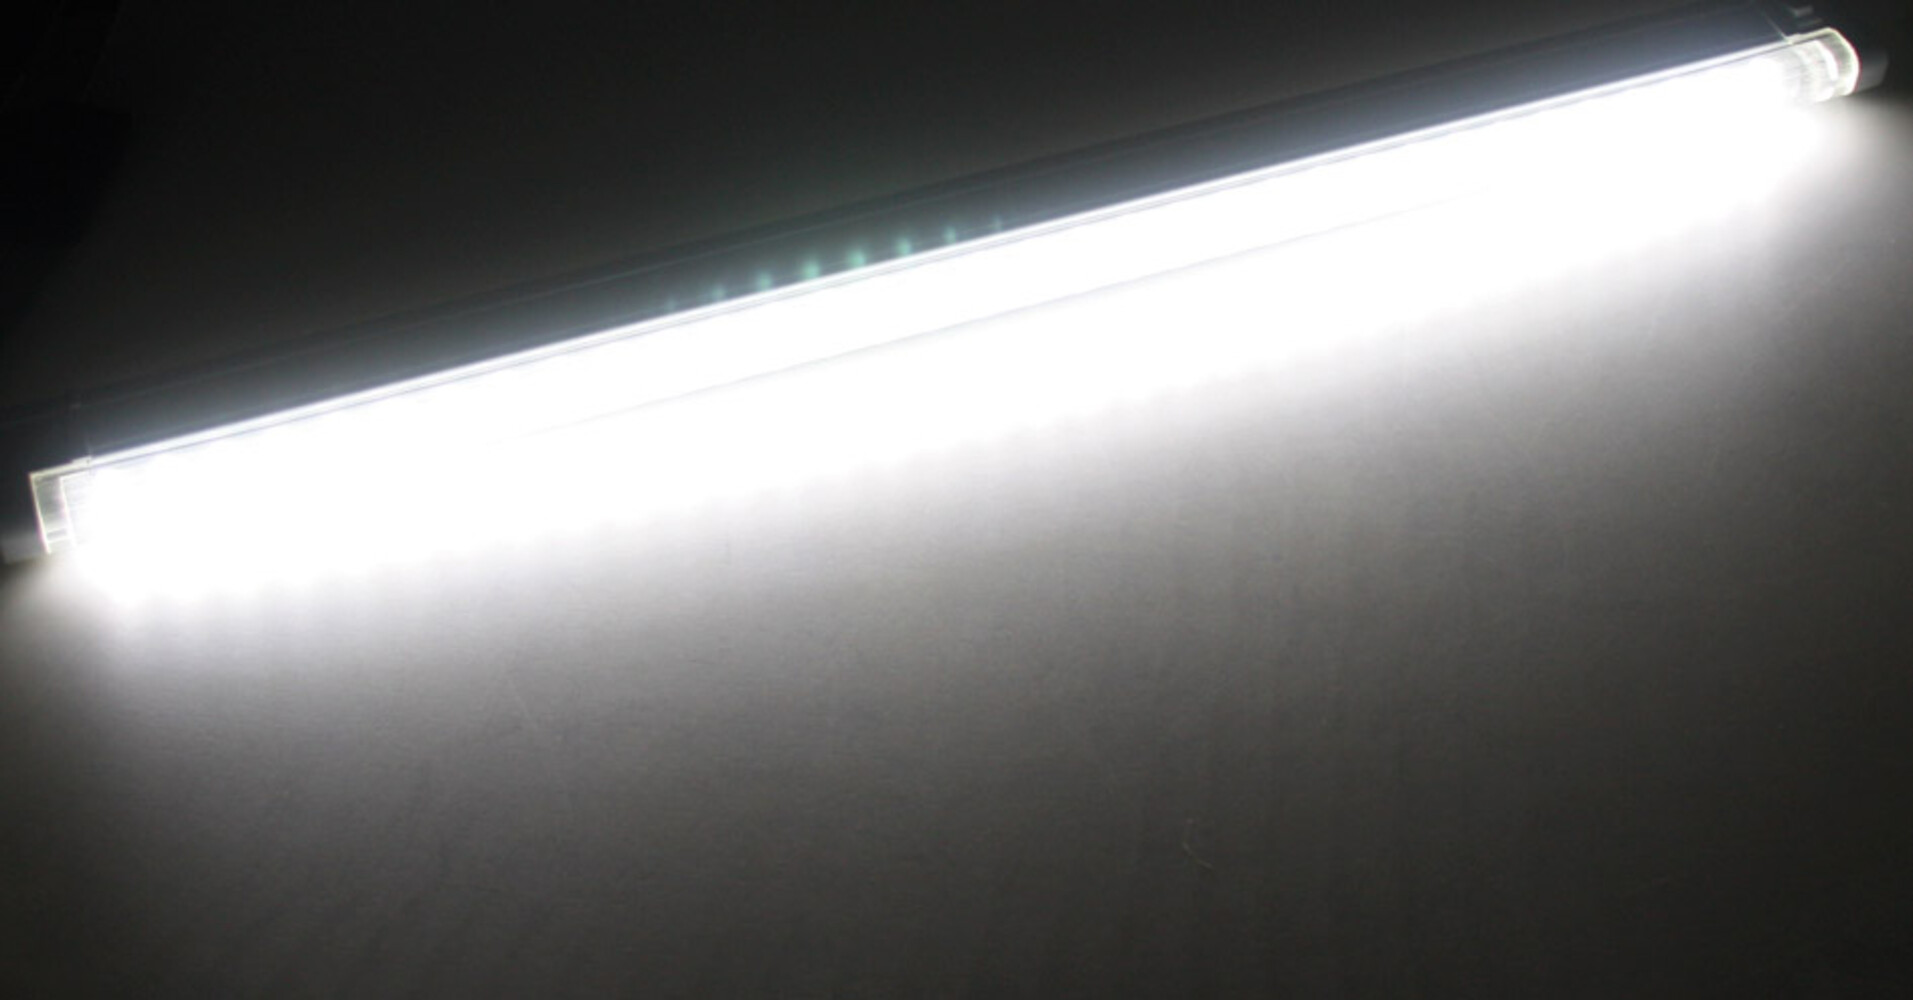 Helle LED Unterbauleuchte von ChiliTec mit beeindruckender Leuchtkraft